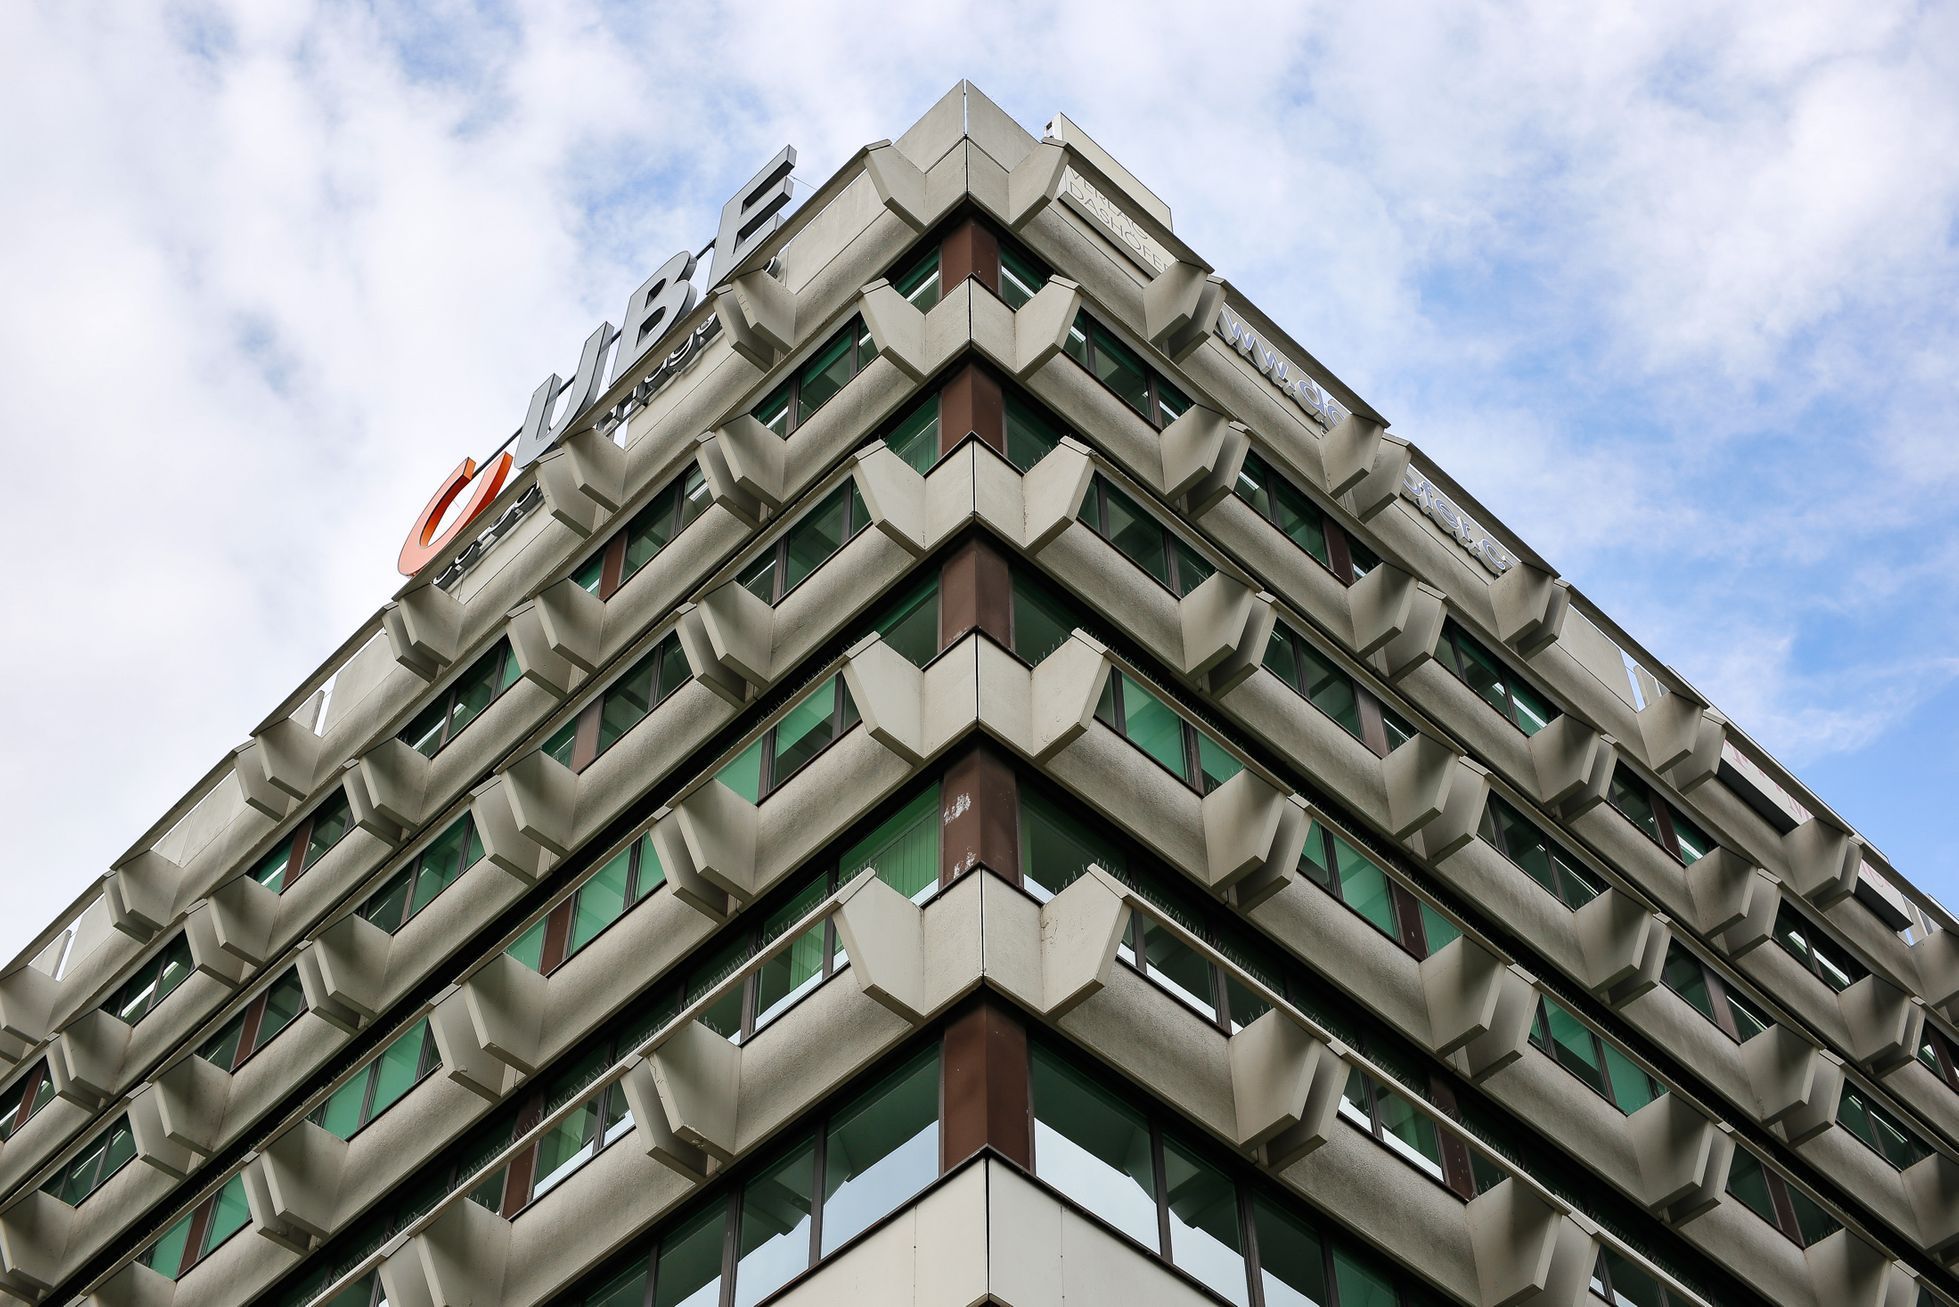 Cube - budova v Dejvicích, prohlídka Nejošklivější architektura Prahy, brutalismus